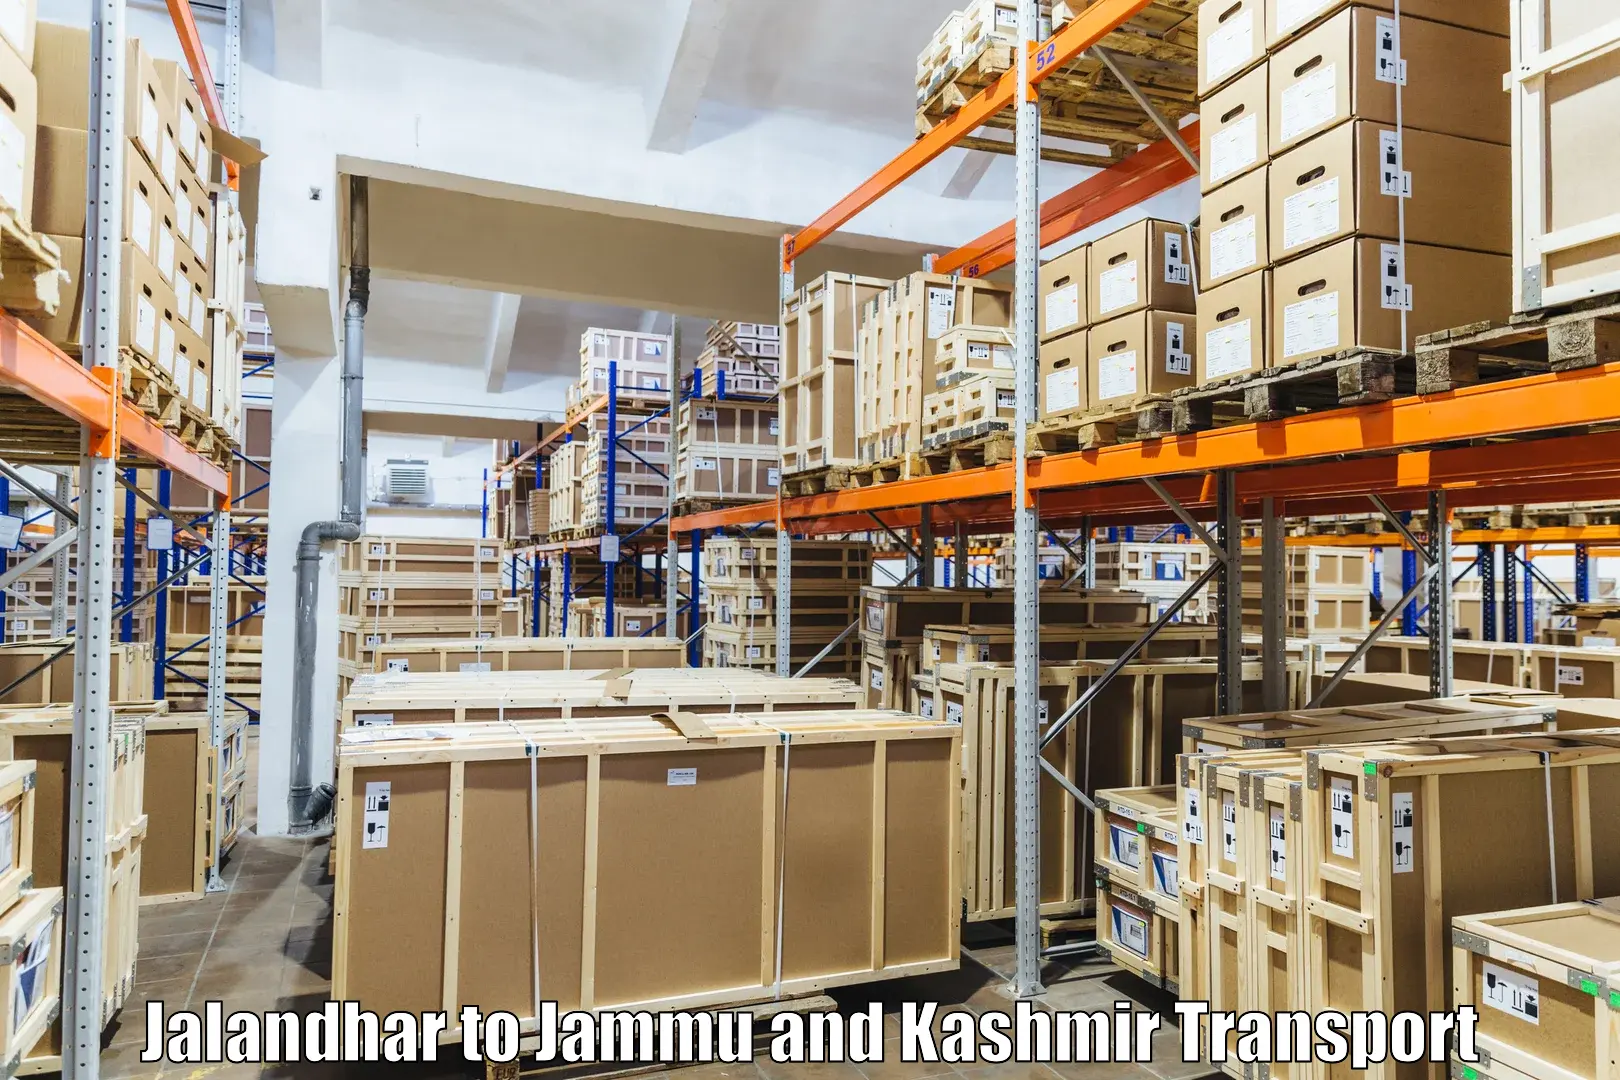 Daily parcel service transport Jalandhar to University of Jammu